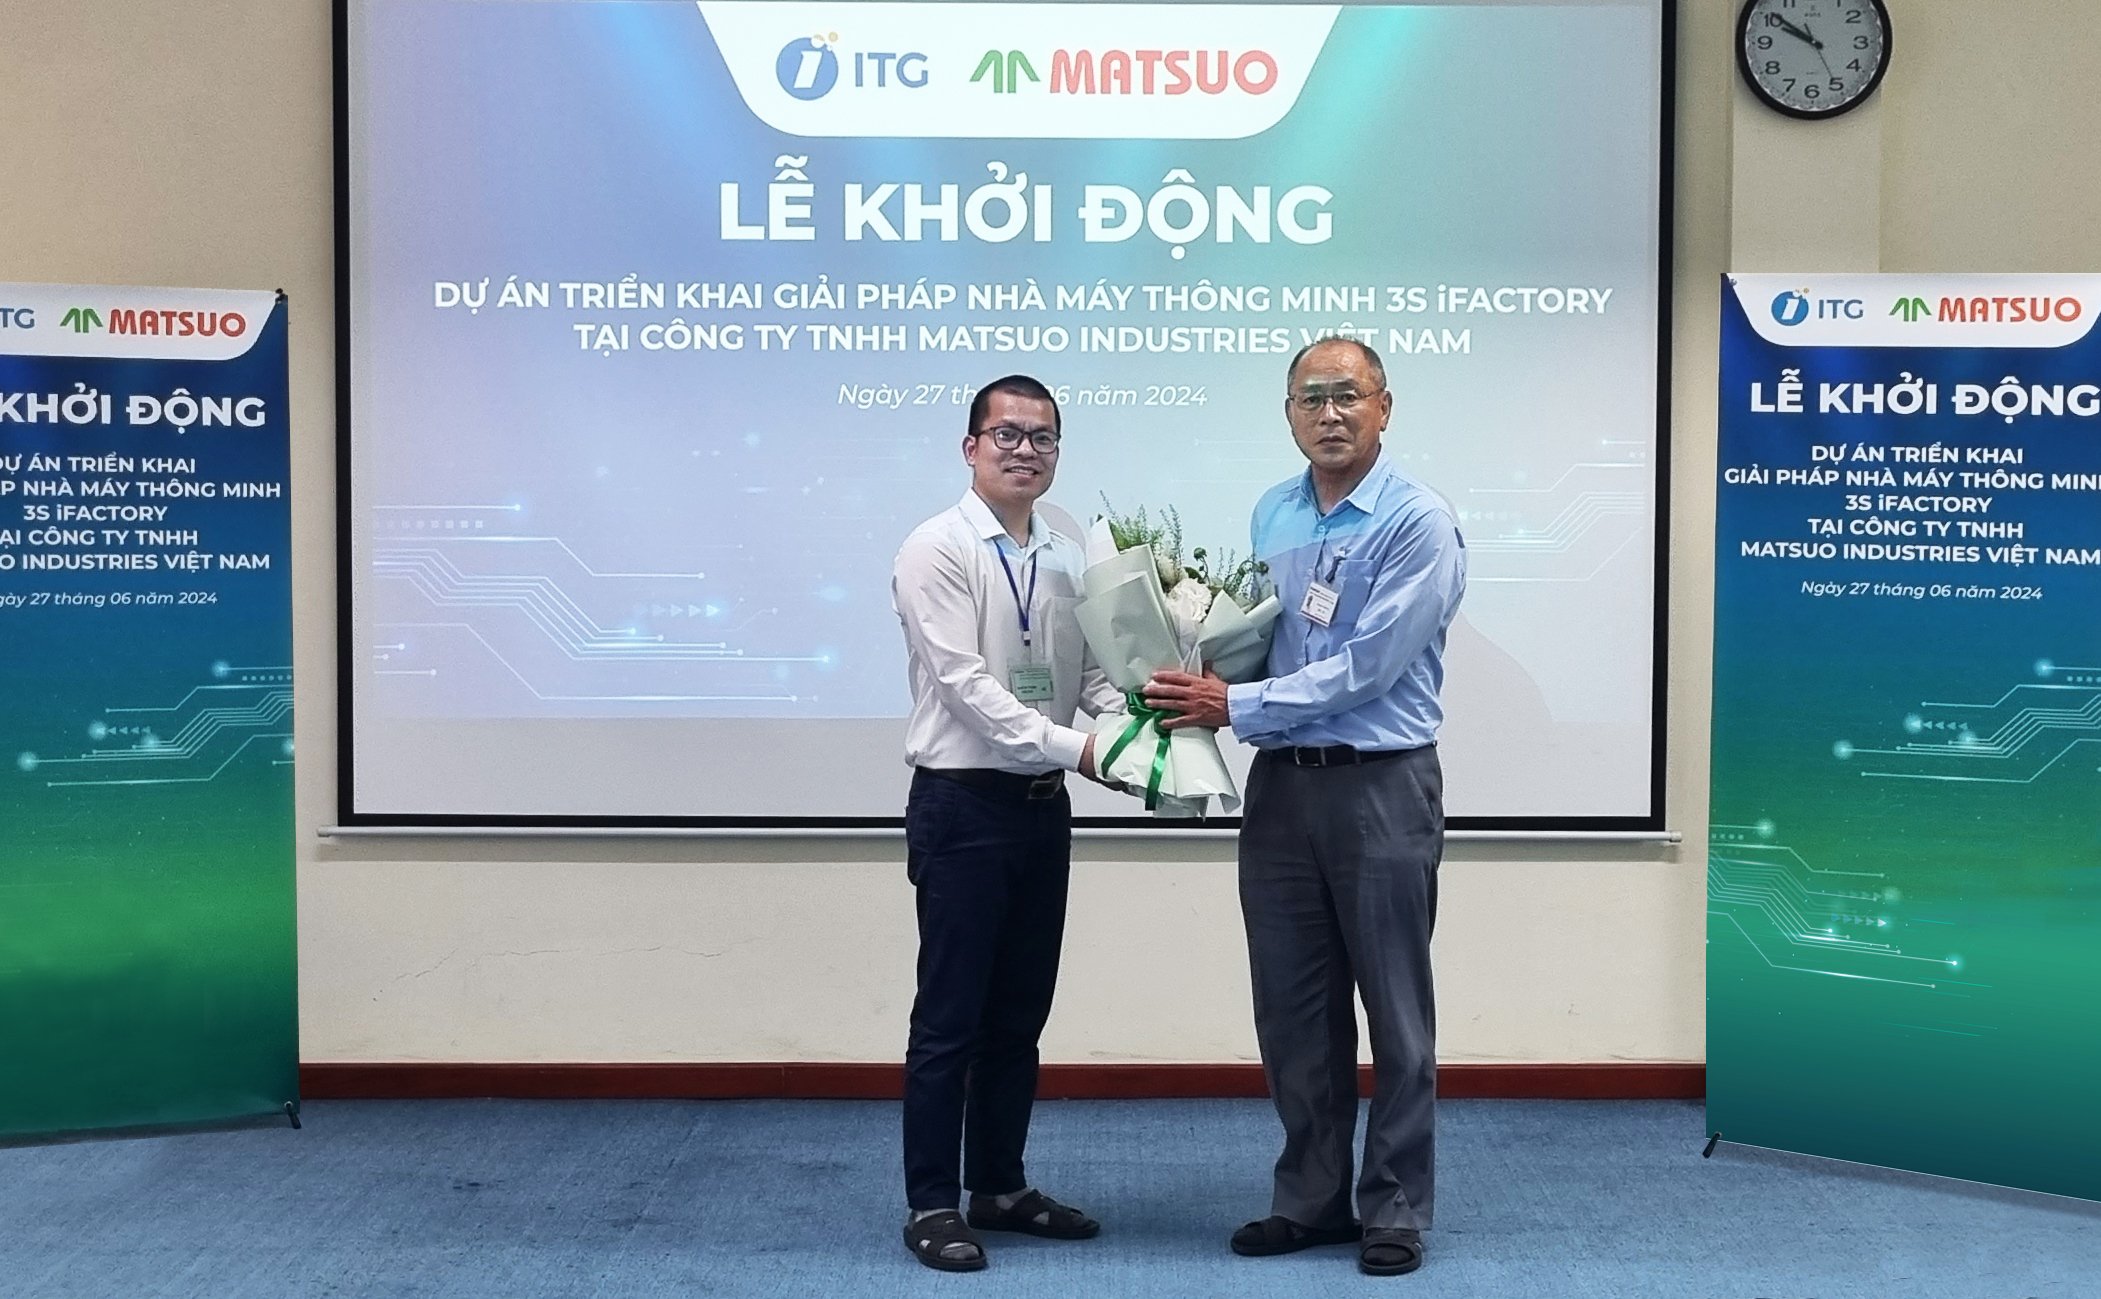 Ông Đinh Thế Hùng - Giám đốc dự án ITG - tặng hoa đáp lại sự tin tưởng của MIV và thể hiện sự quyết tâm triển khai dự án thành công